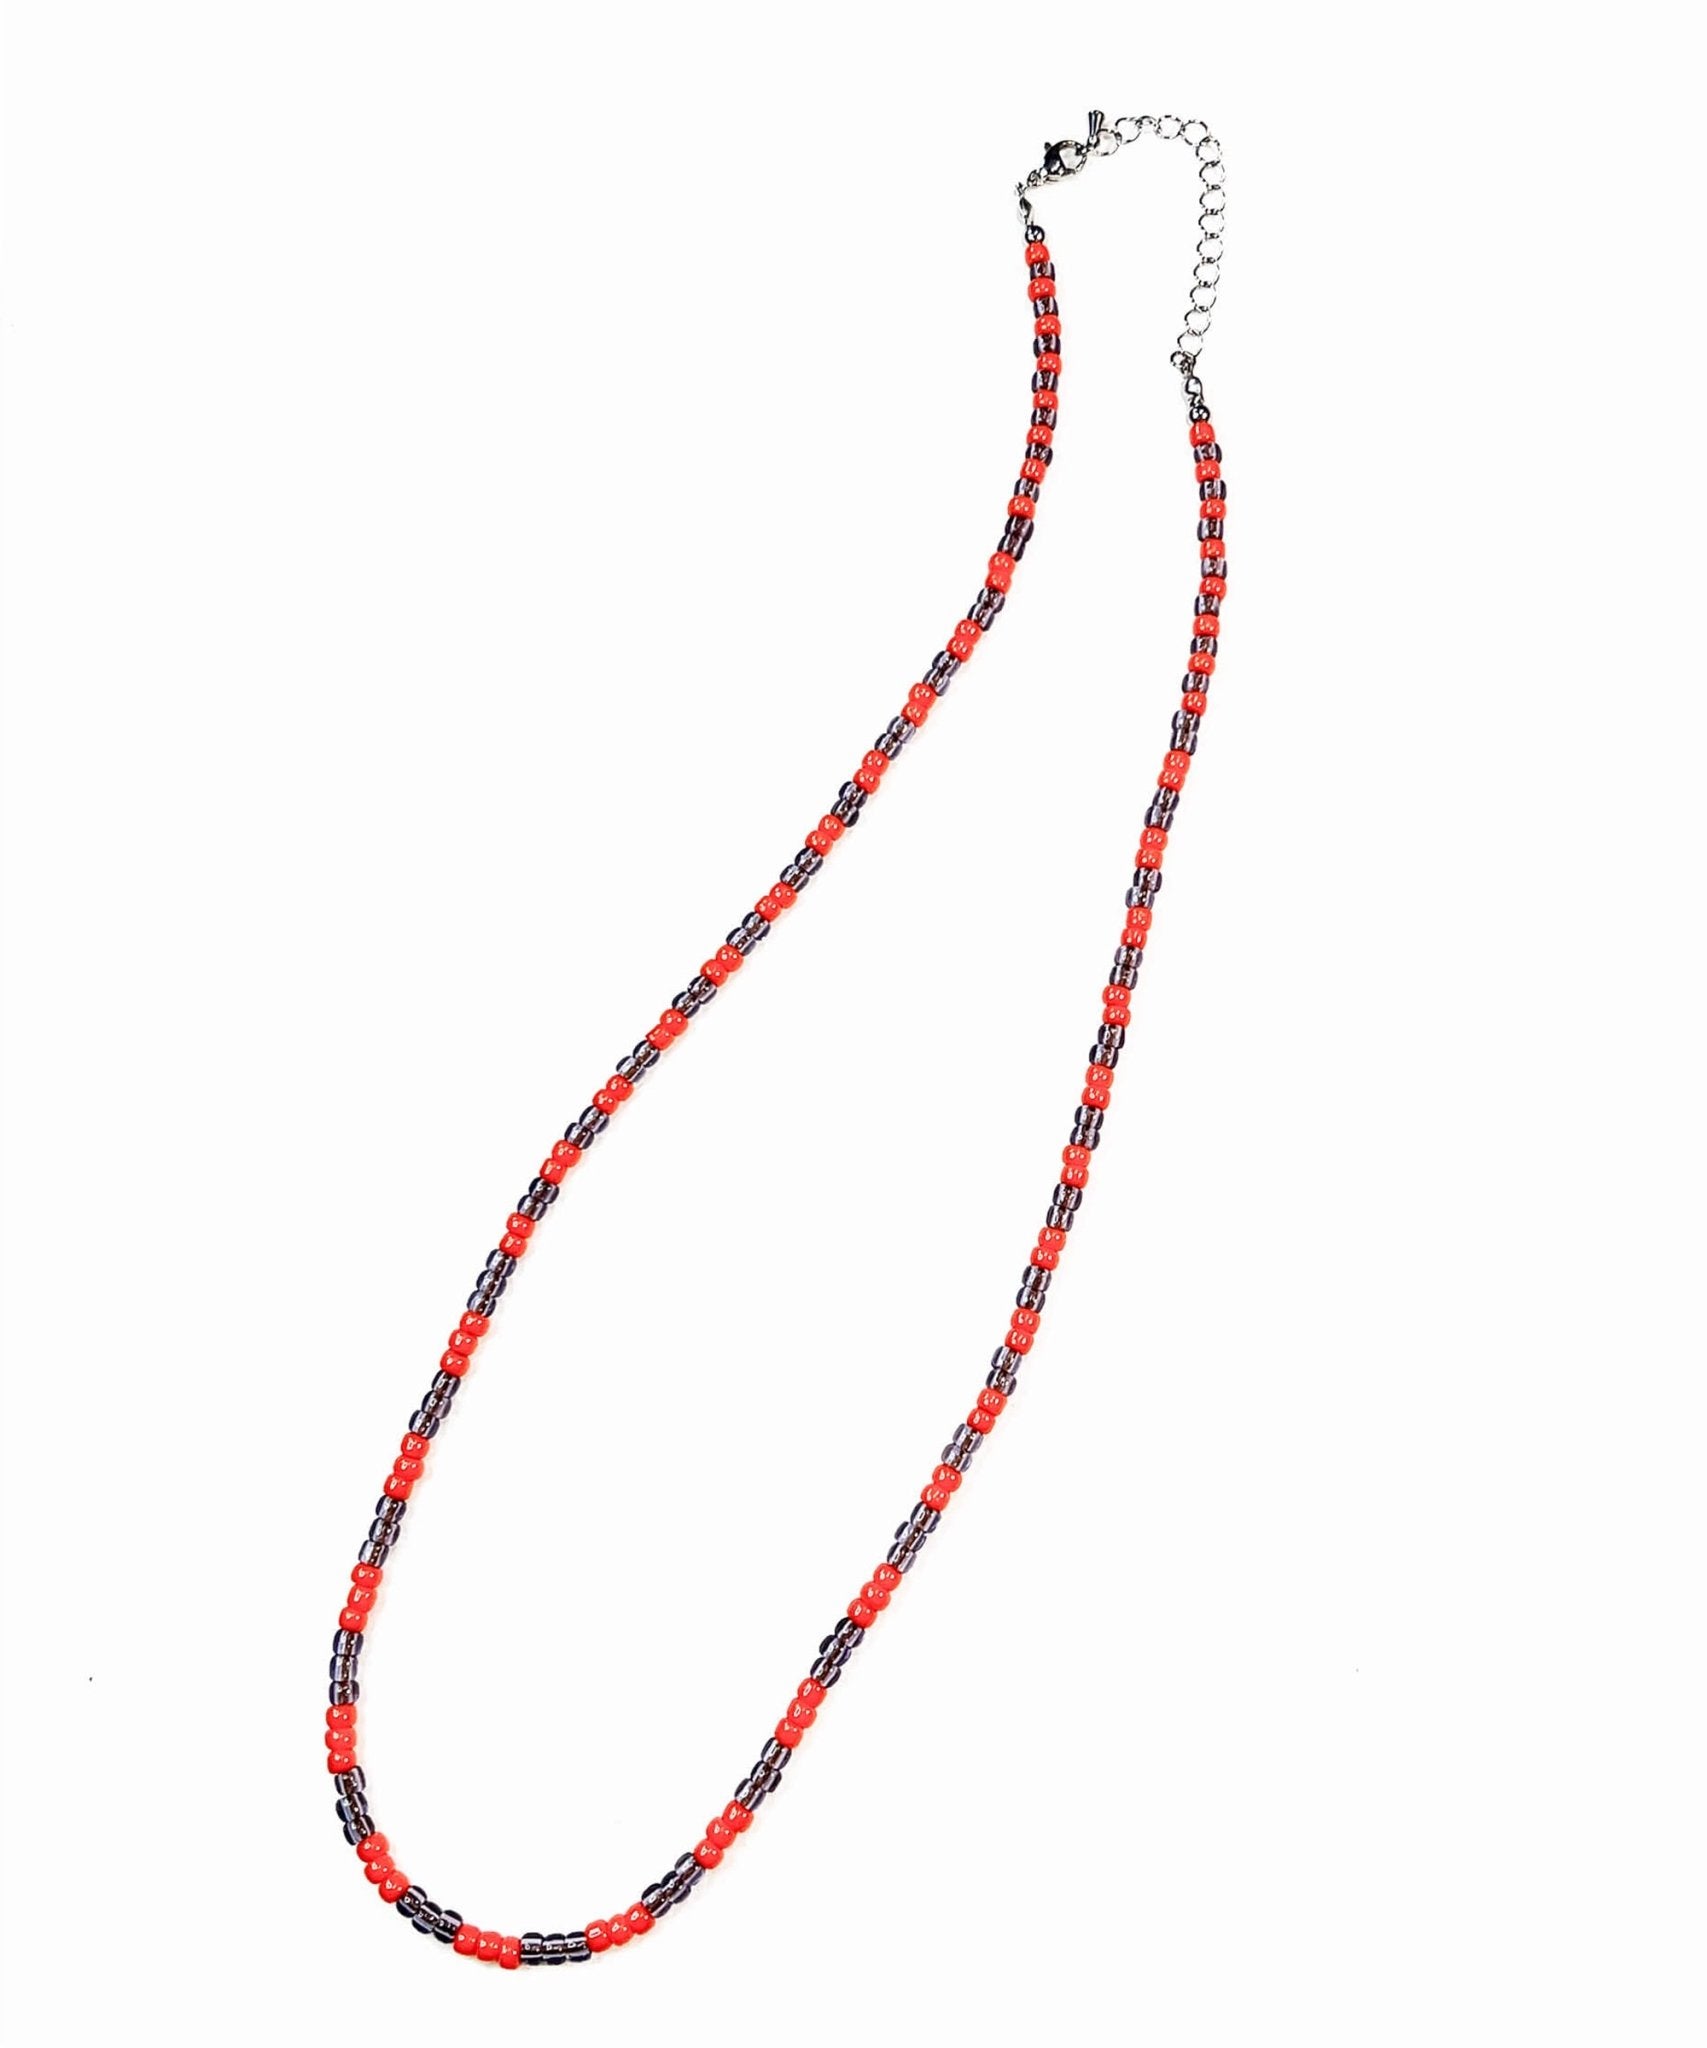 【11/5(日)まで予約受付アイテム】Beads necklace collaboration with Adder - ORANGE × PURPLE - DIET BUTCHER